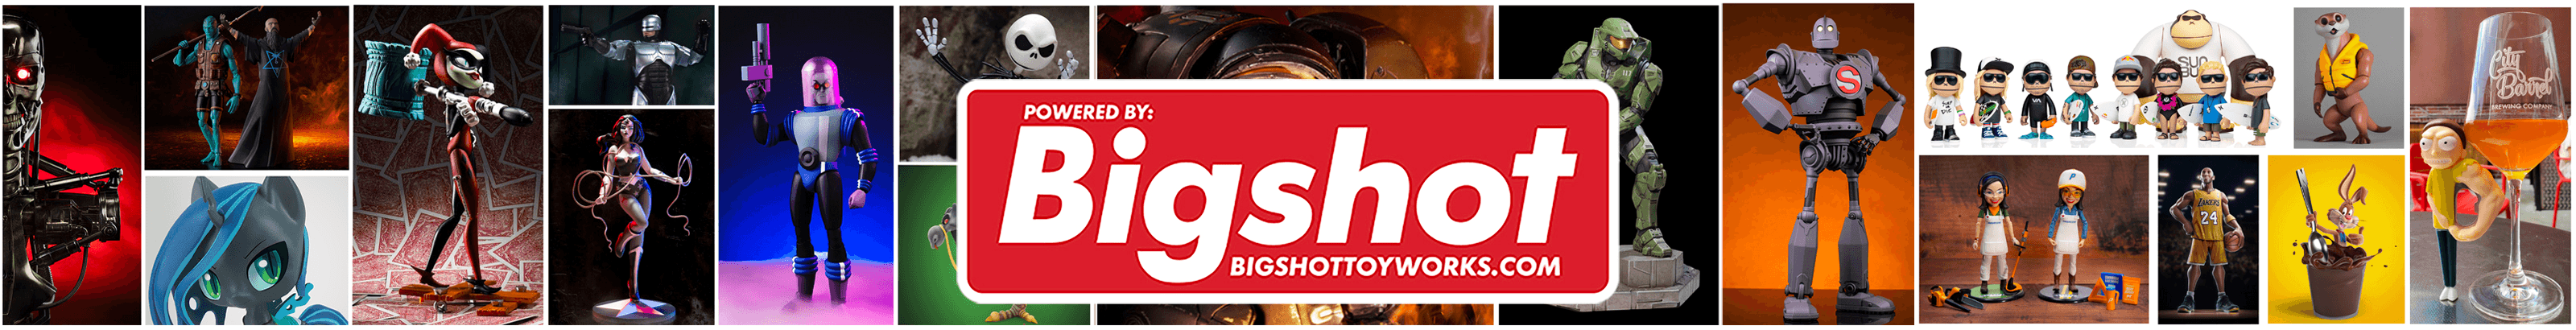 BigshotToyworks banner